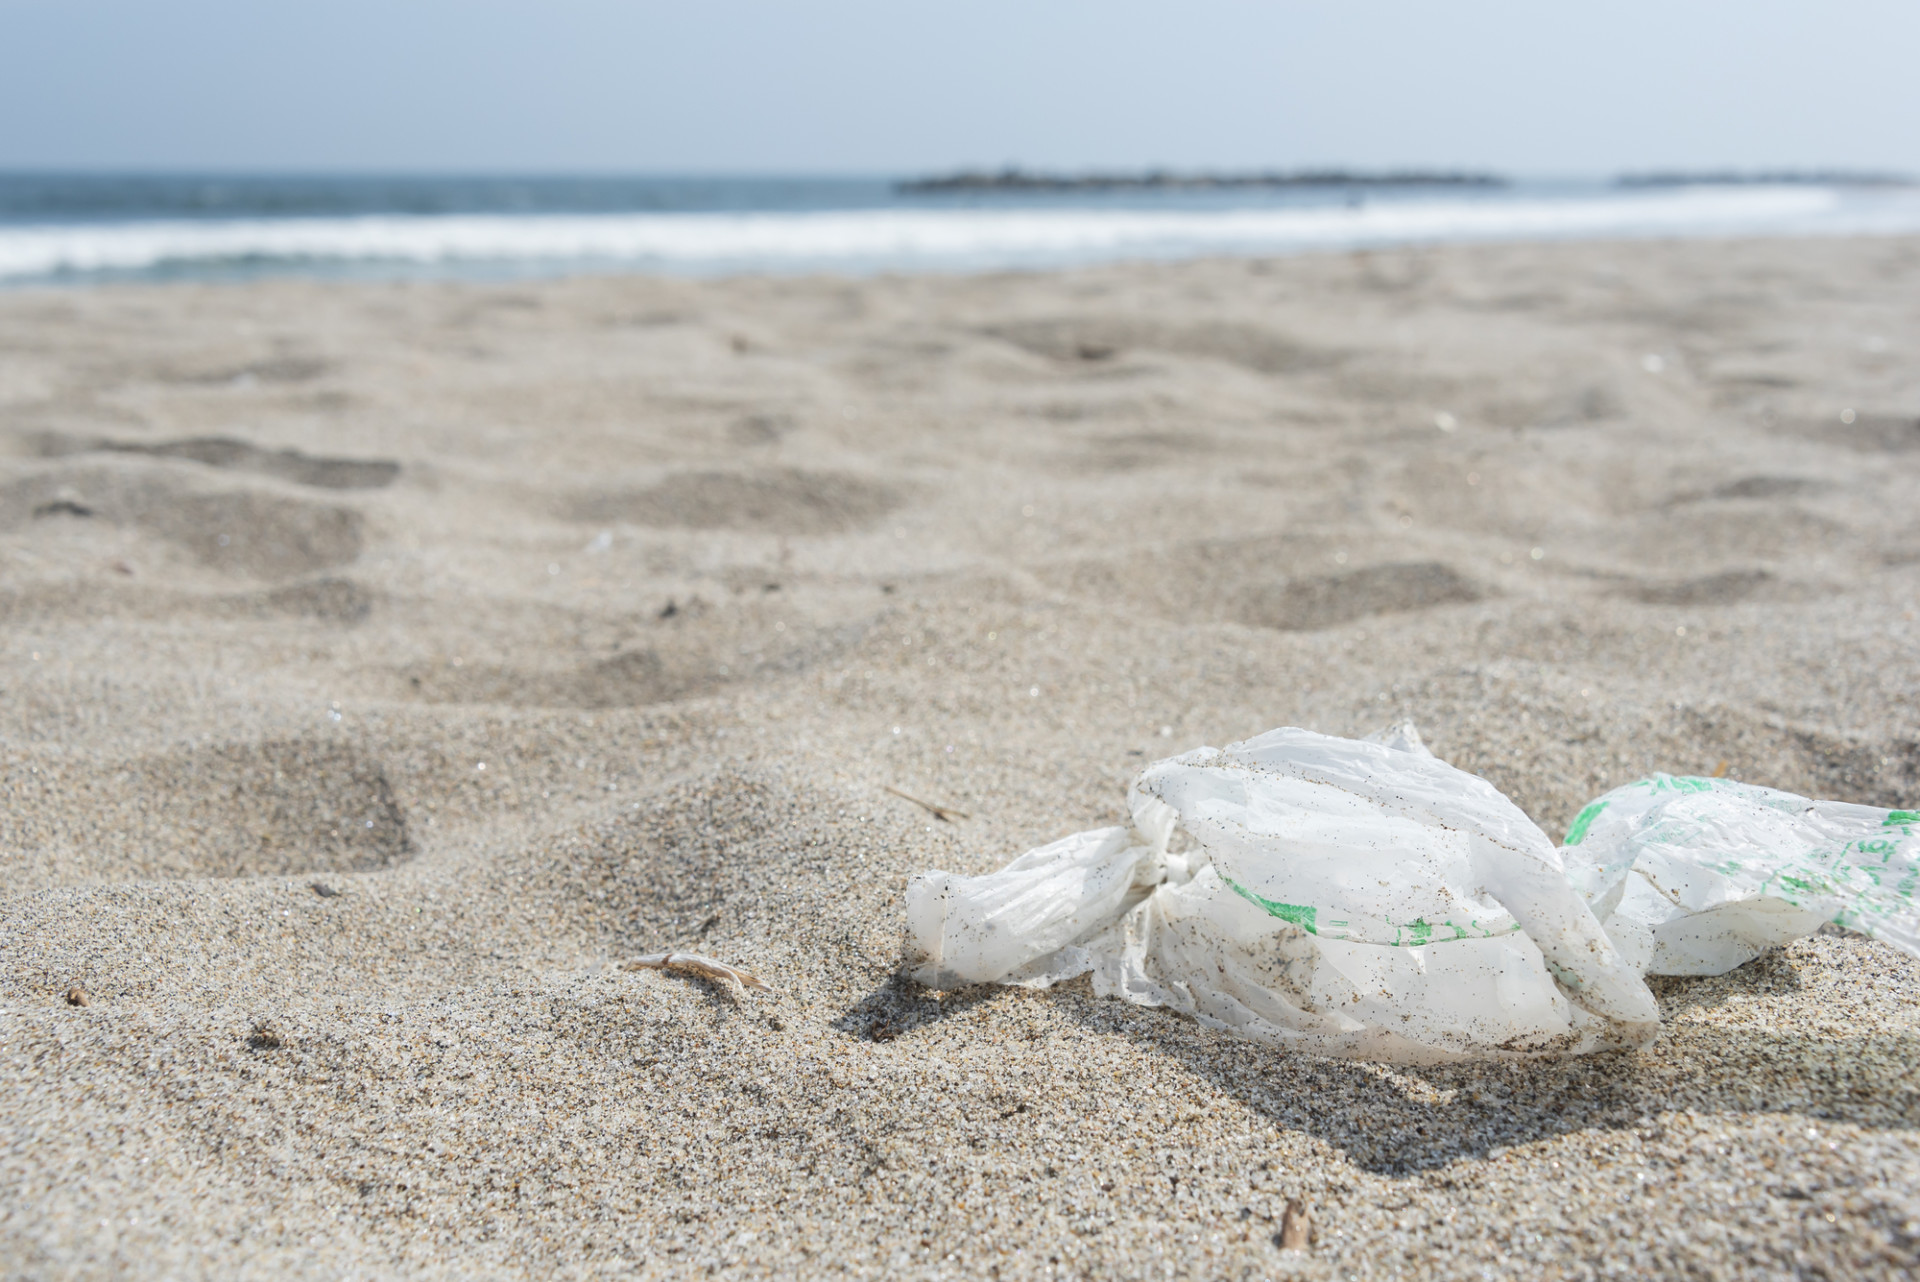 環境にやさしいプラスチックとは バイオマスプラスチックと生分解性プラスチックの違いについて紹介 折兼ラボ 株式会社折兼